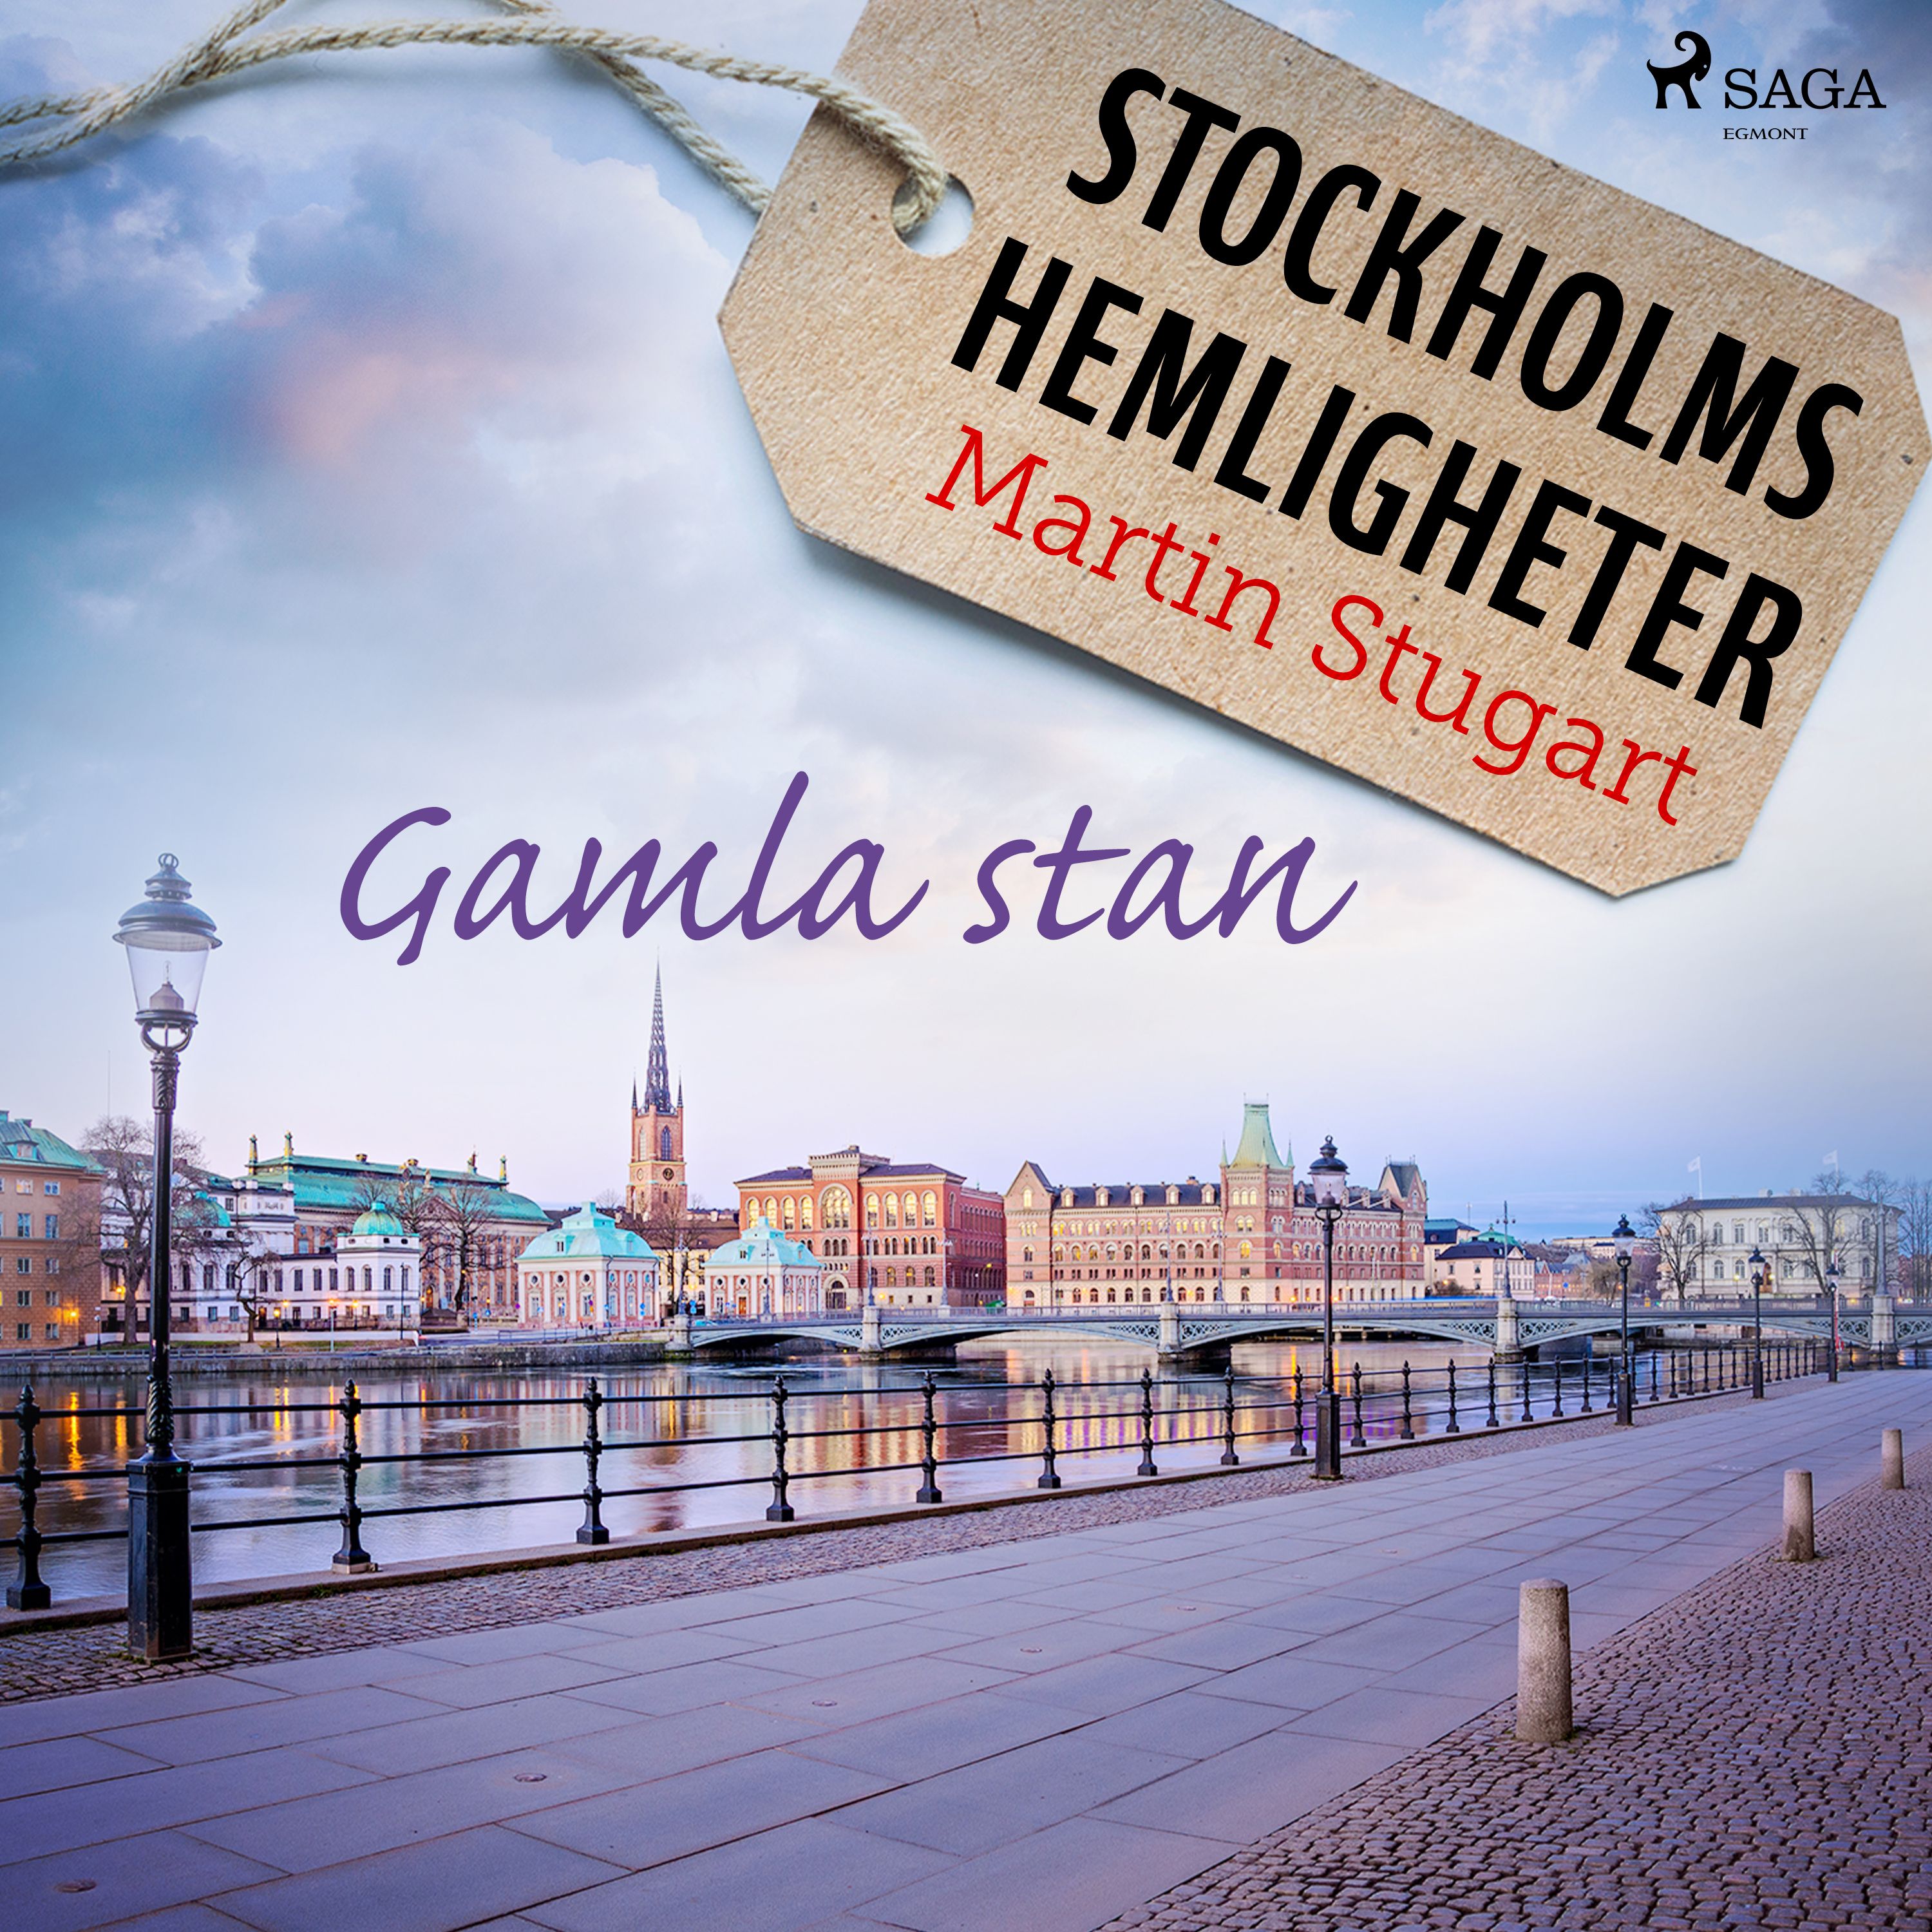 Stockholms hemligheter: Gamla stan, ljudbok av Martin Stugart